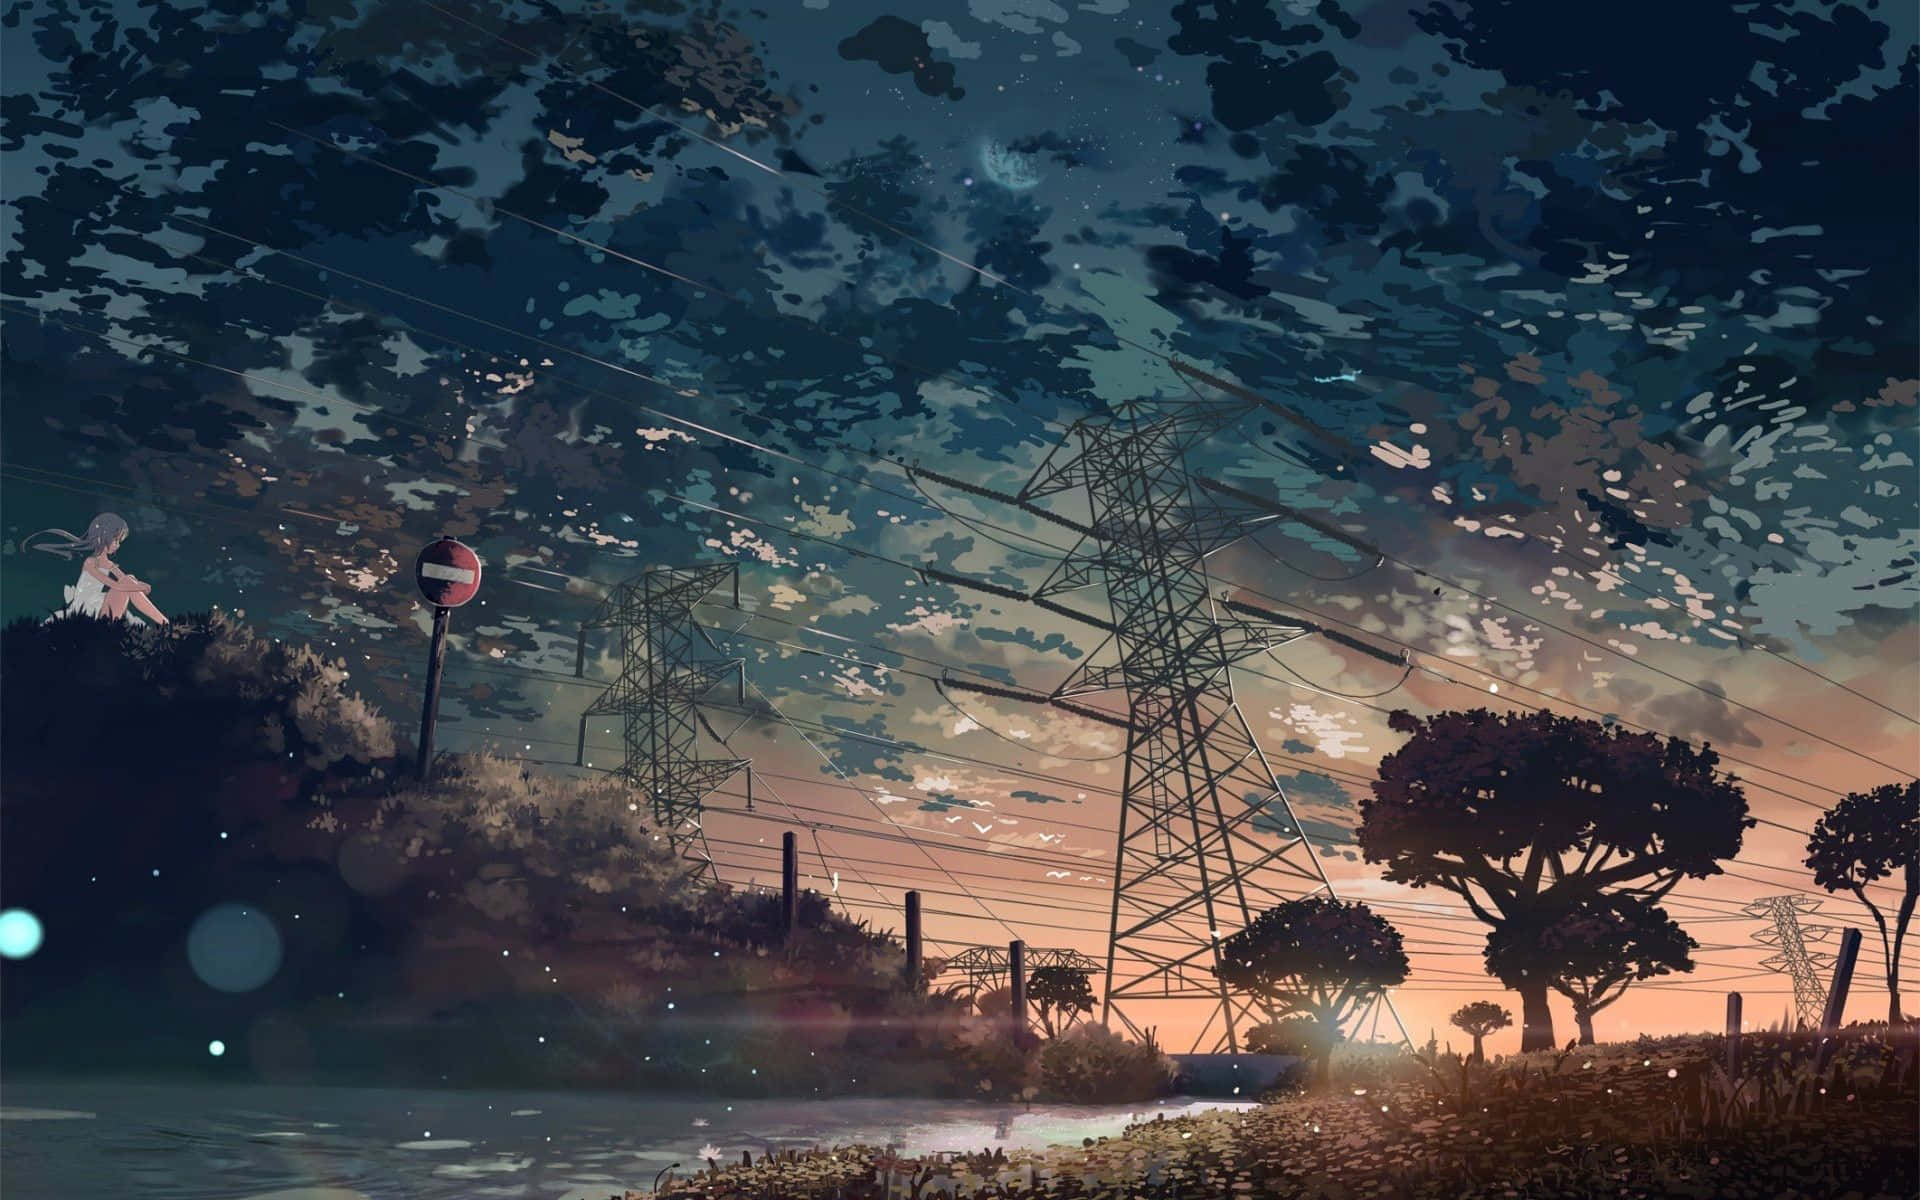 Unpaisaje Inspirador Y Cautivador De Aesthetic Ghibli. Fondo de pantalla